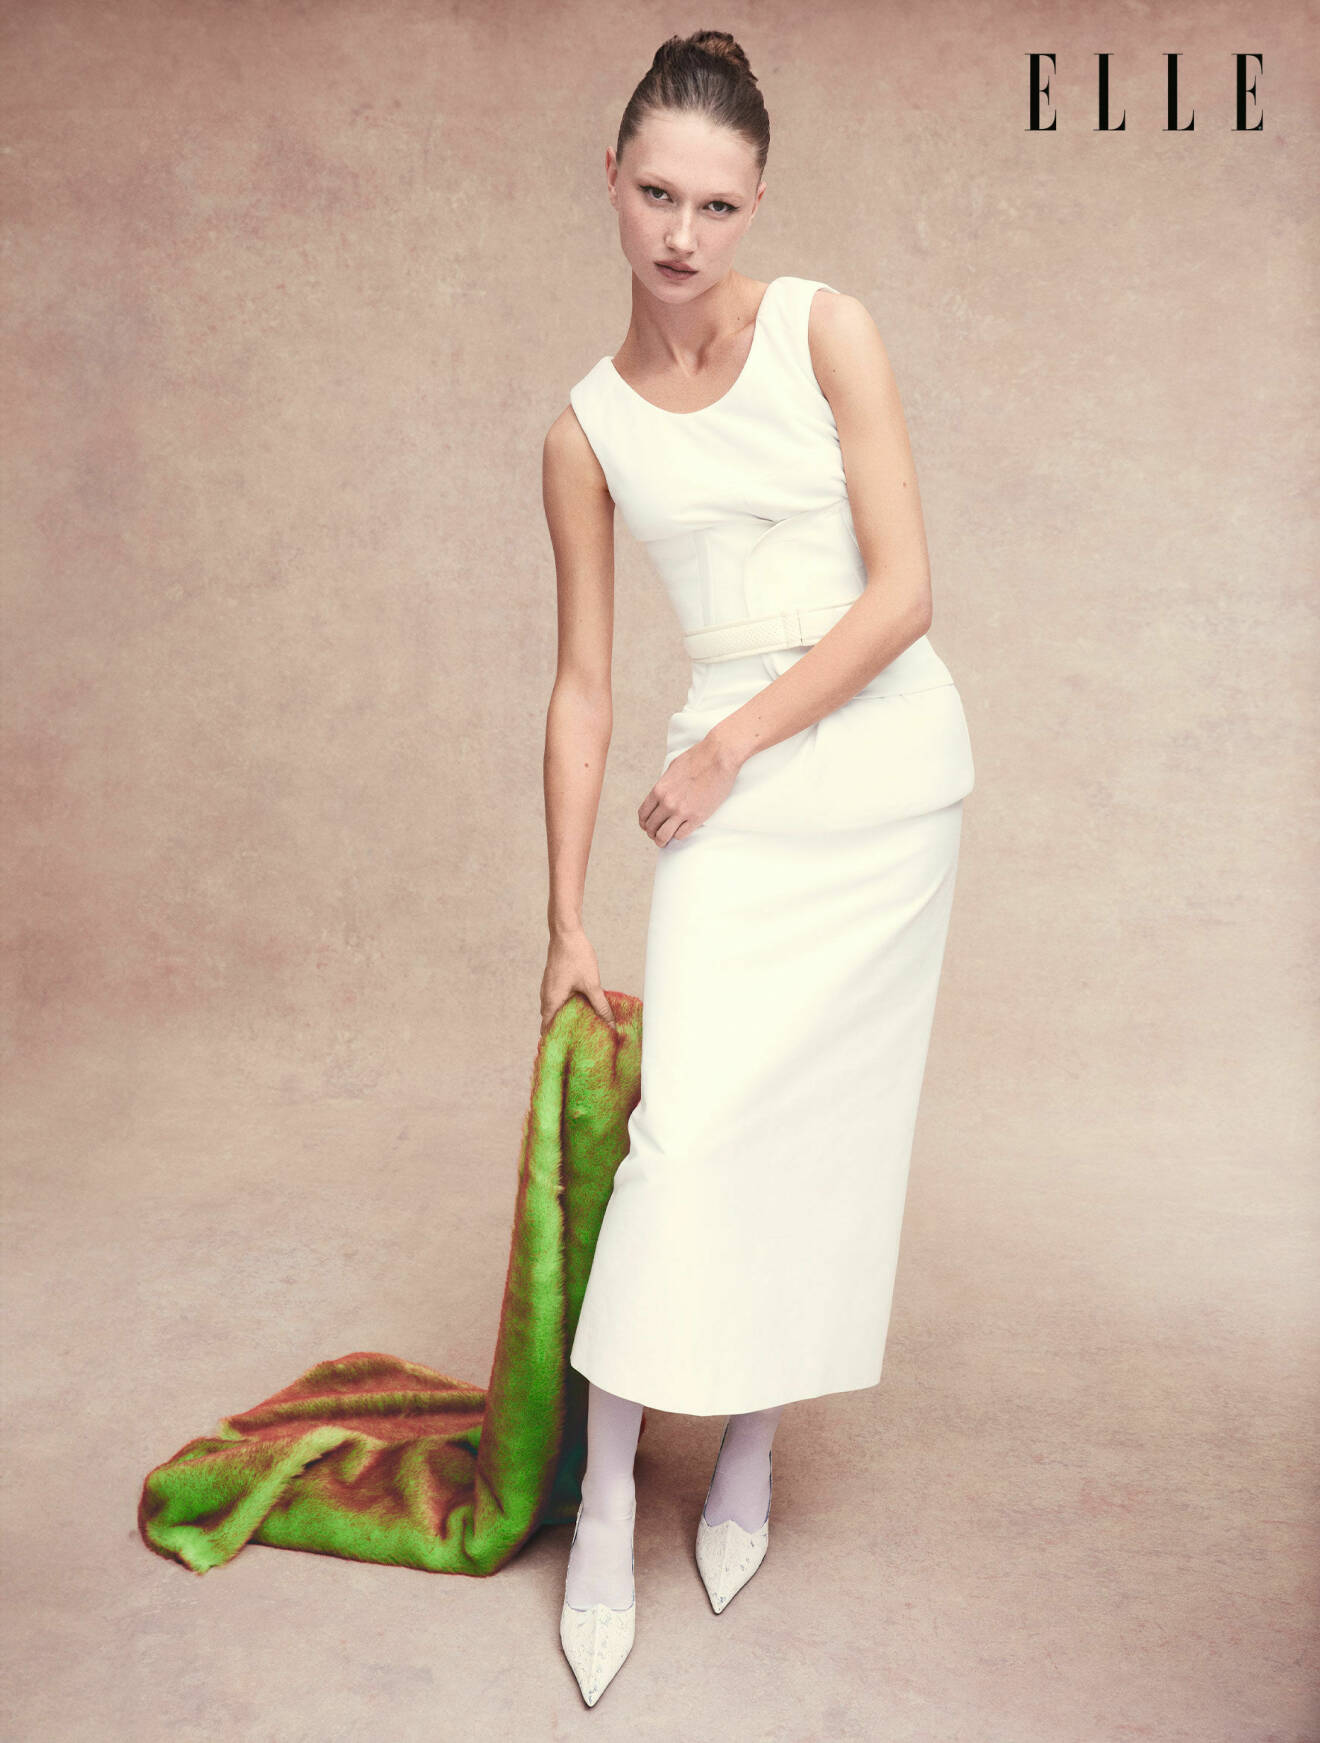 Modellen Evelina är klädd i vit topp, korsett, kjol och bälte från Sportmax.